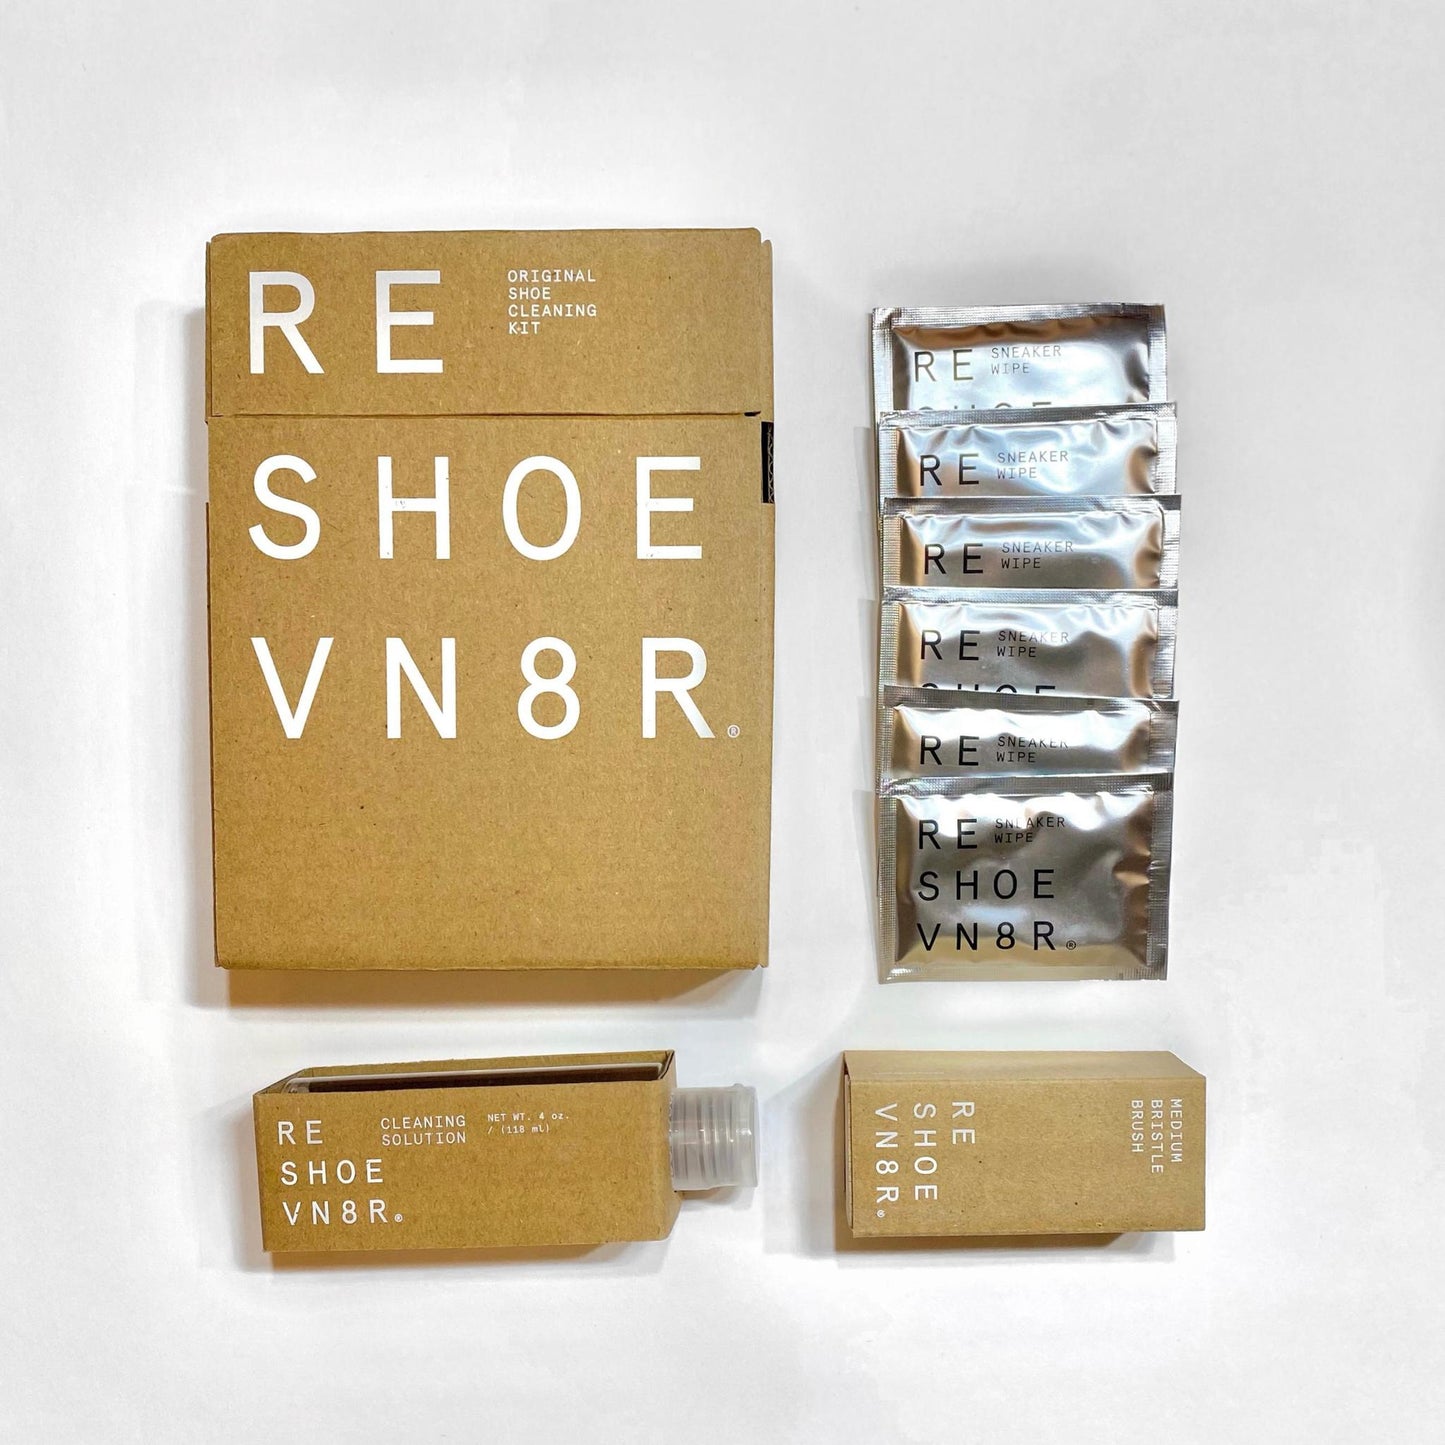 Reshoevn8r Original Shoe Cleaning Kit